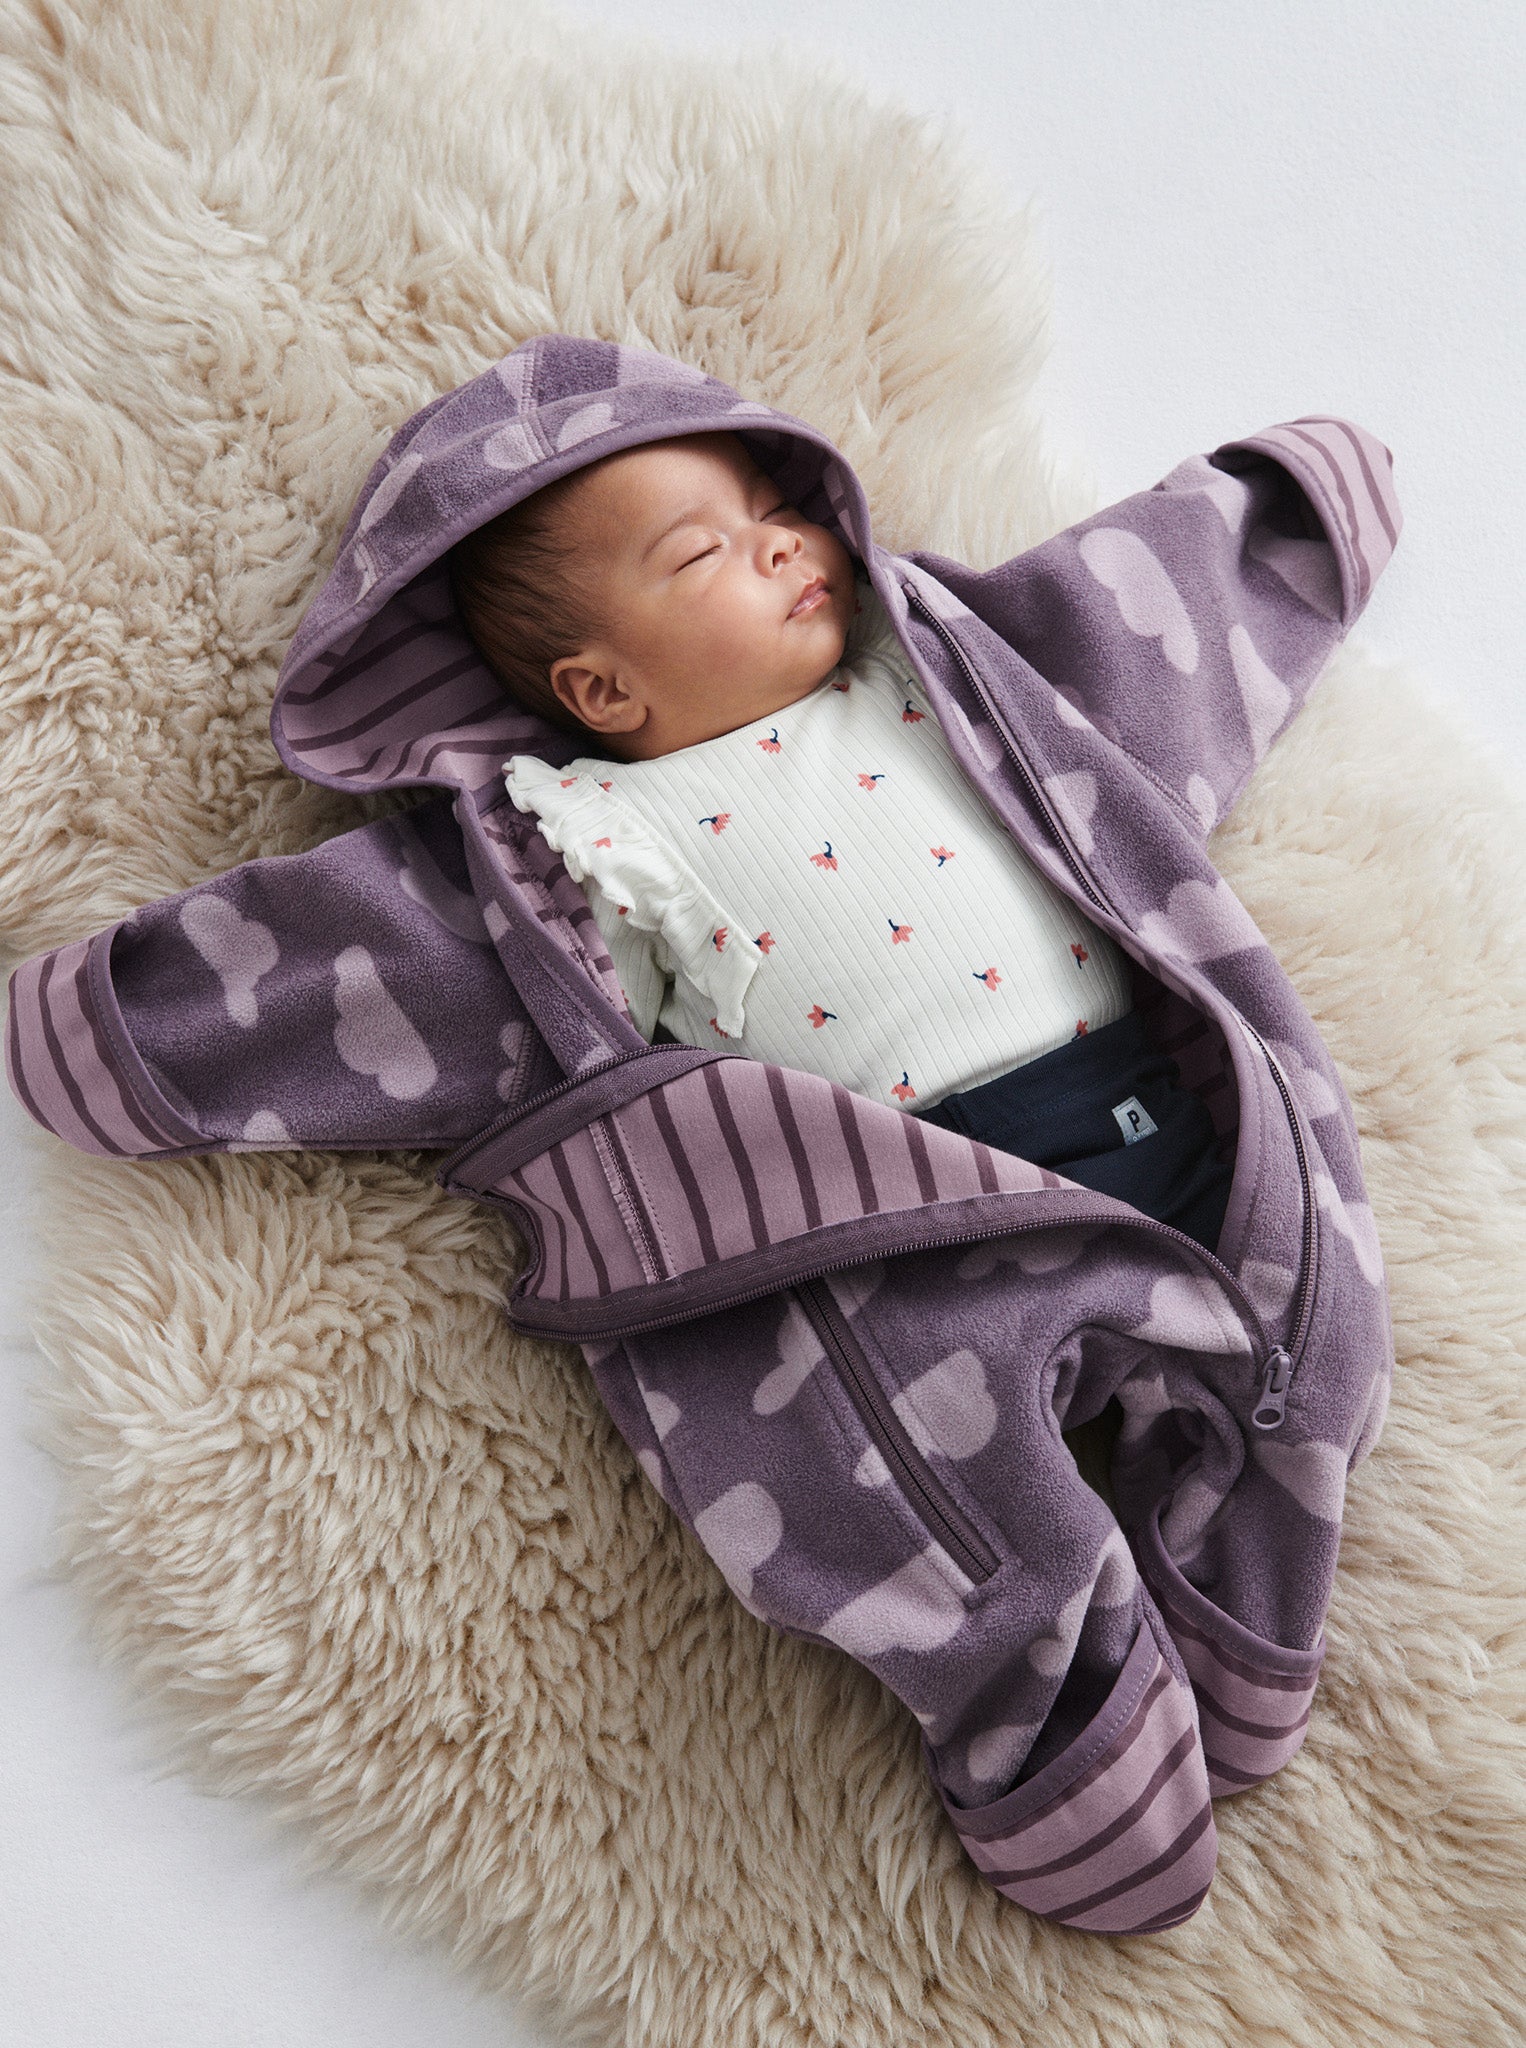 Windproof Fleece Baby Pramsuit